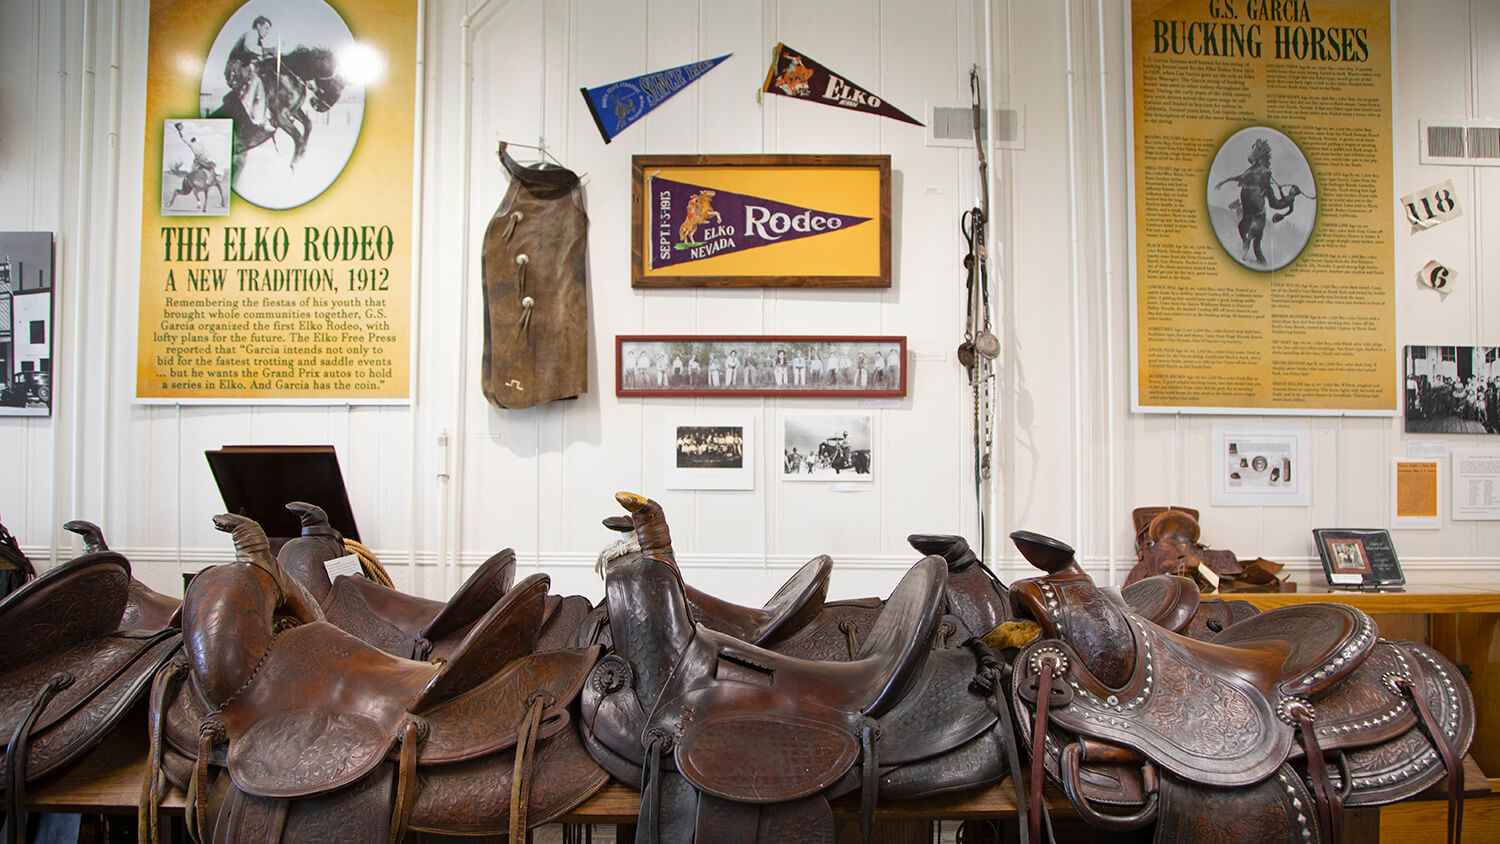 cowboy arts and gear museum, cowboy museum elko, elko cowboy museum, gs garcia